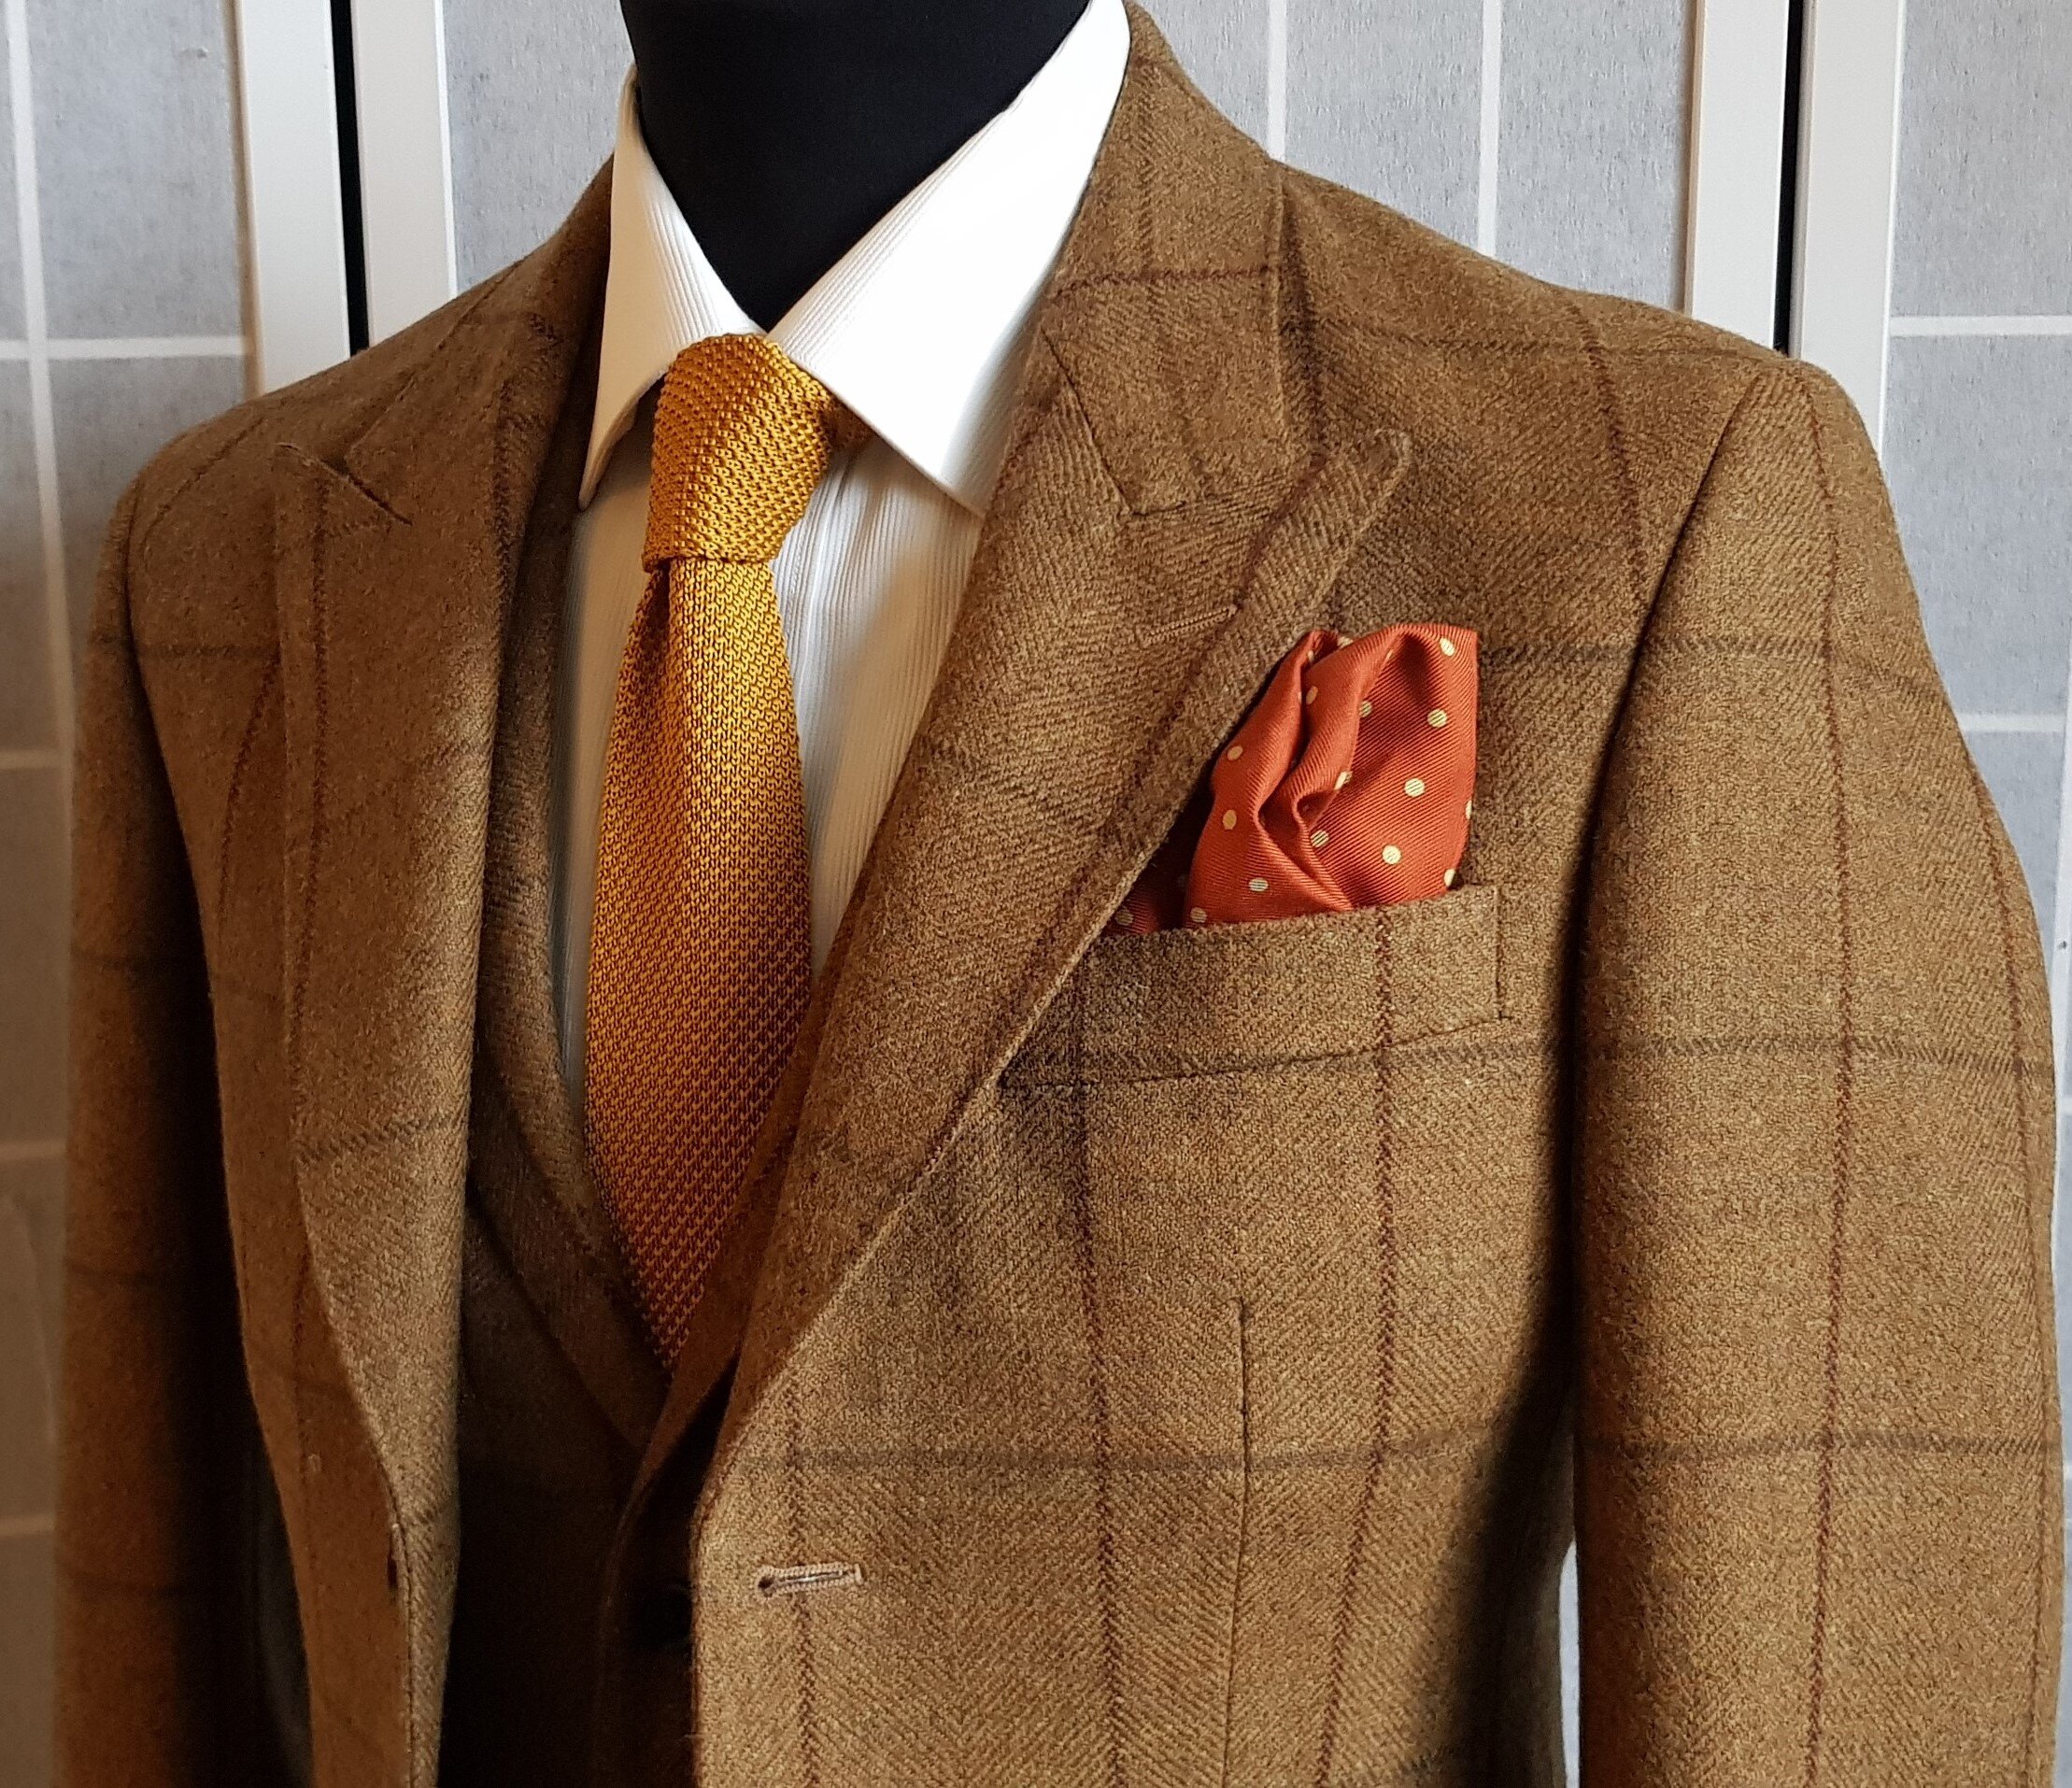 3 Piece Suit in Glenroyal Tweed (6).jpg